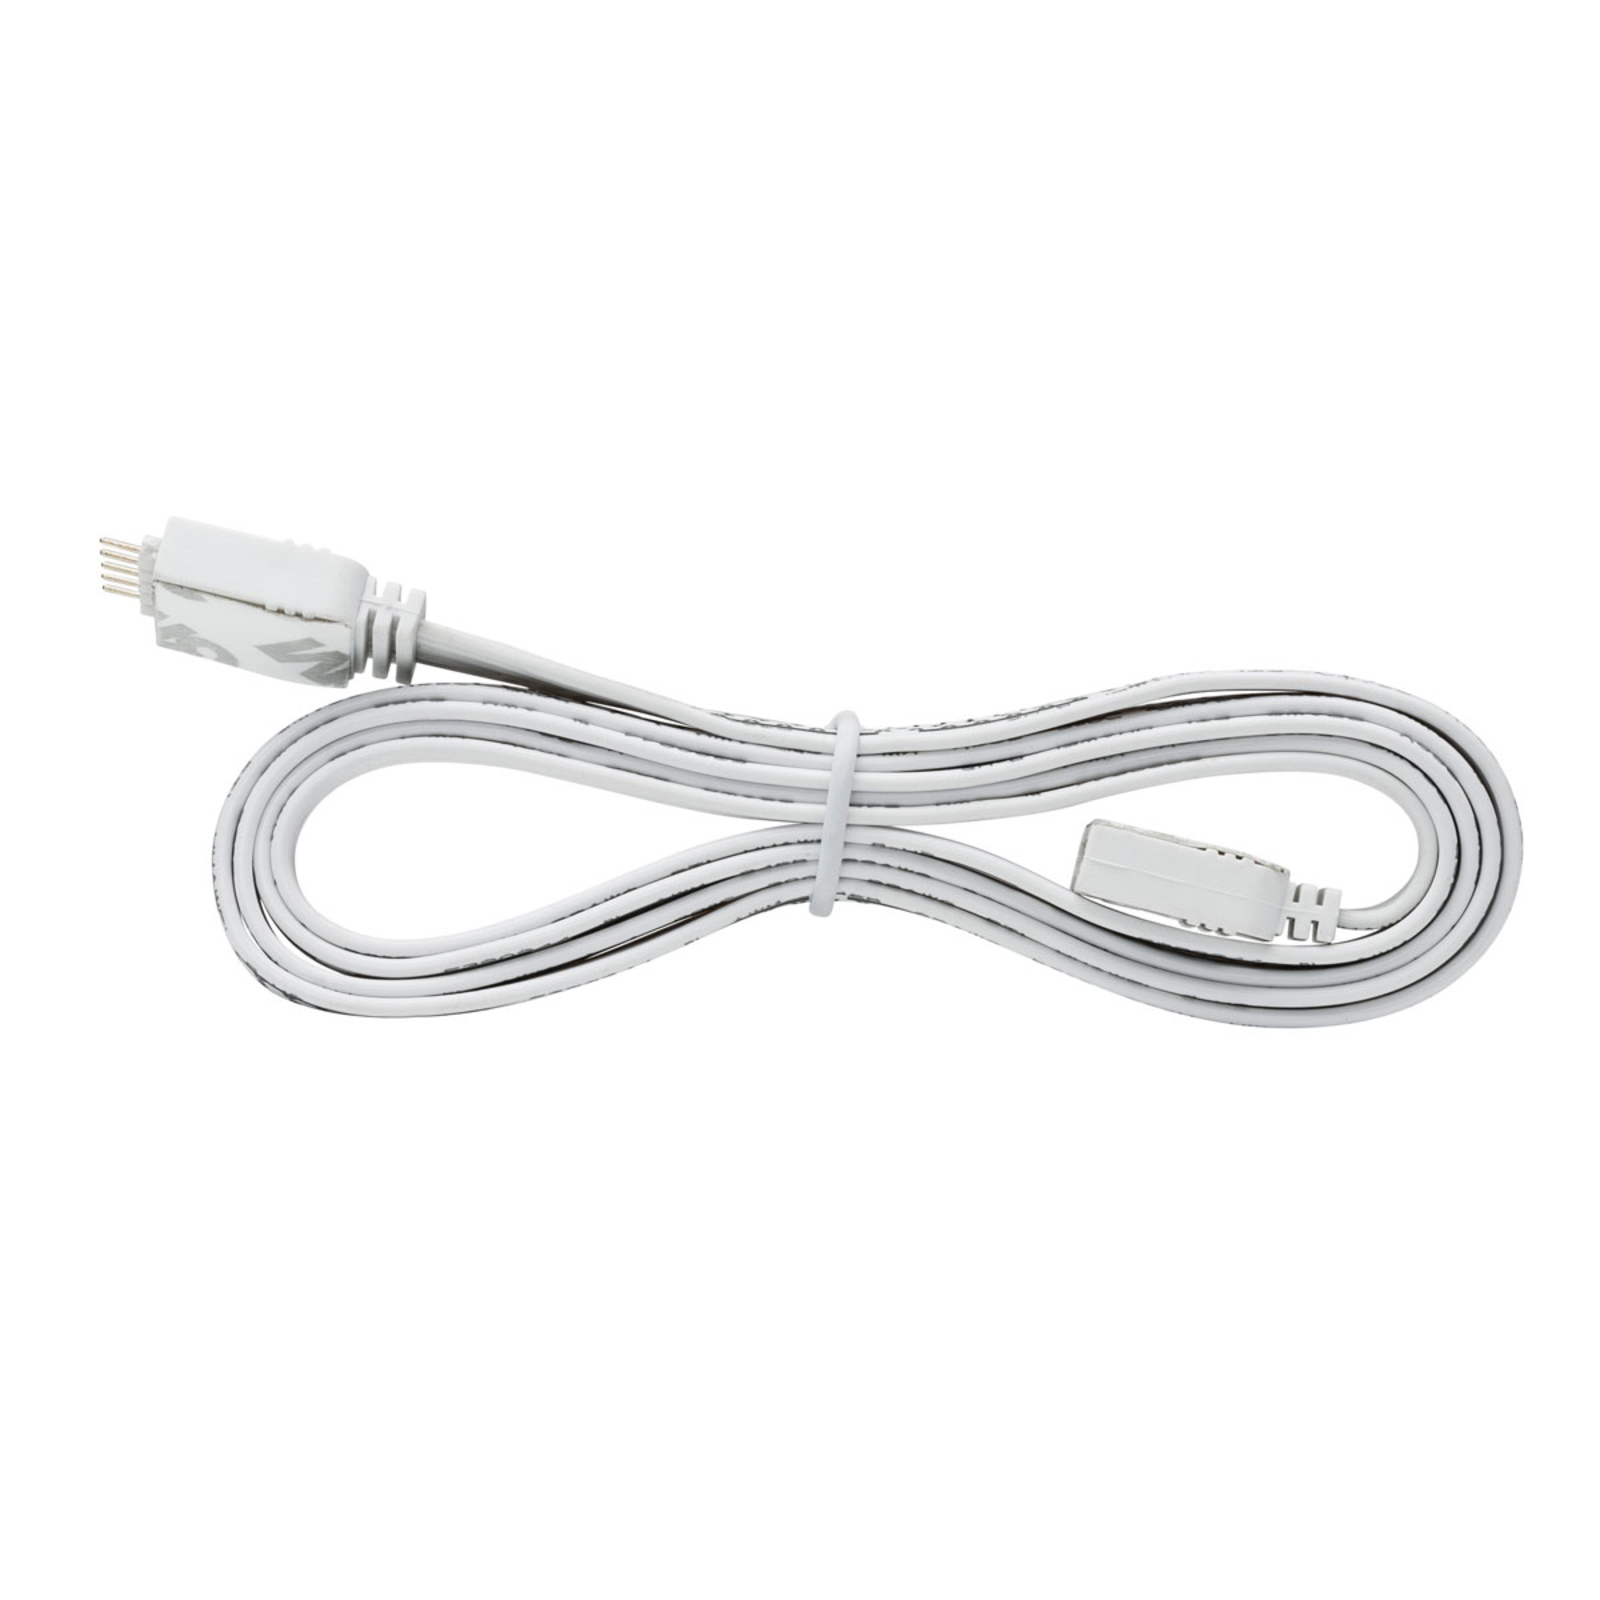 Paulmann MaxLED cable conexión flexible 1m, blanco